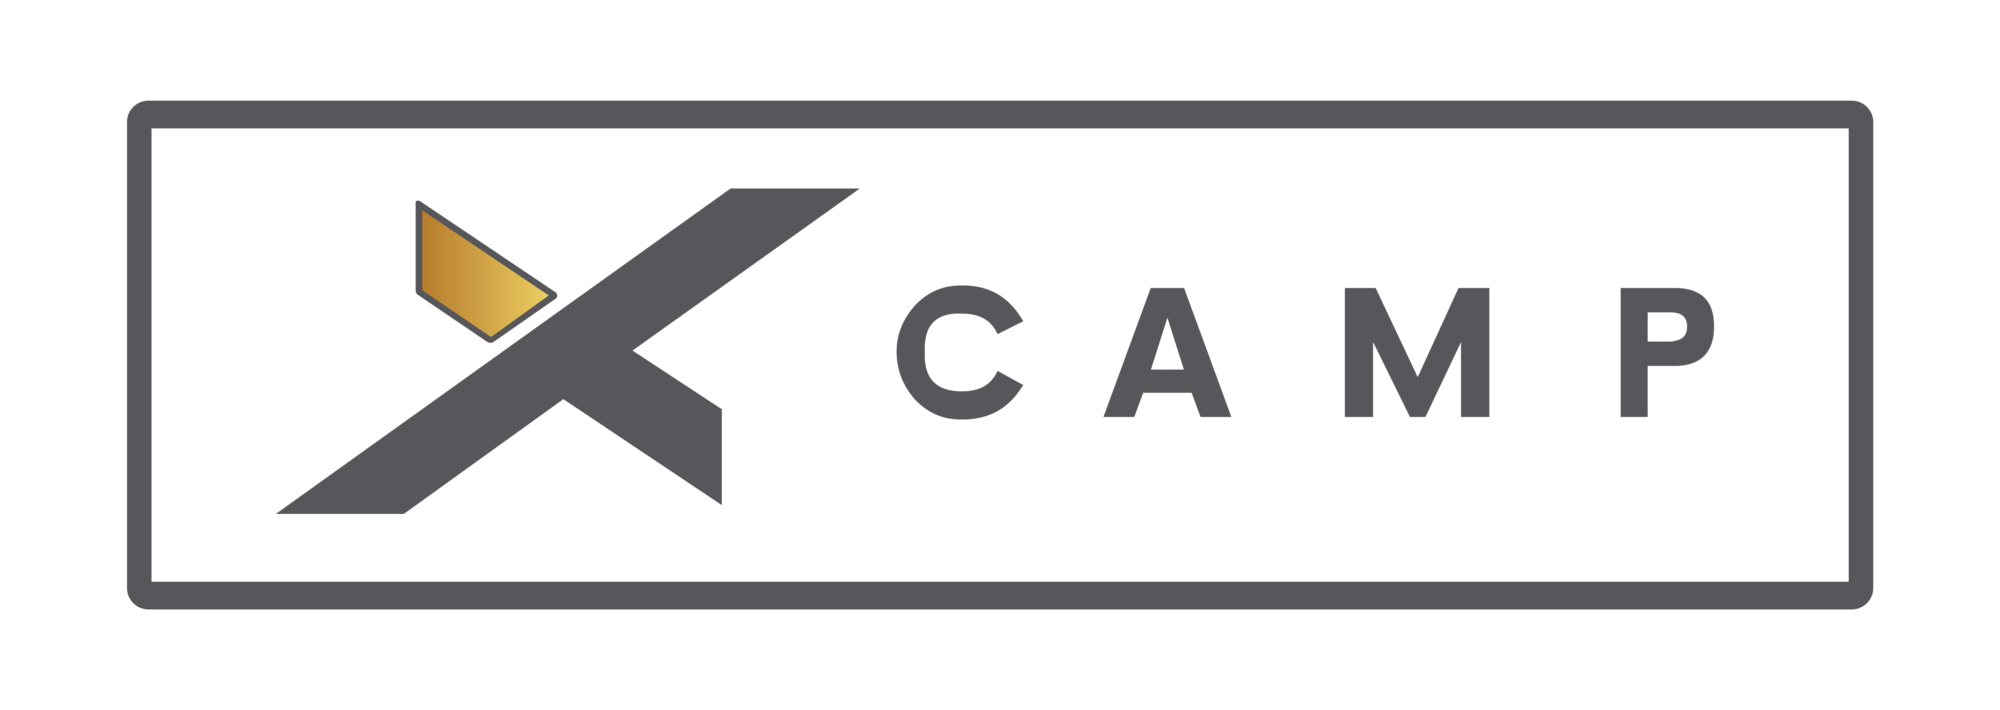 XCAMP – sklep z akcesoriami